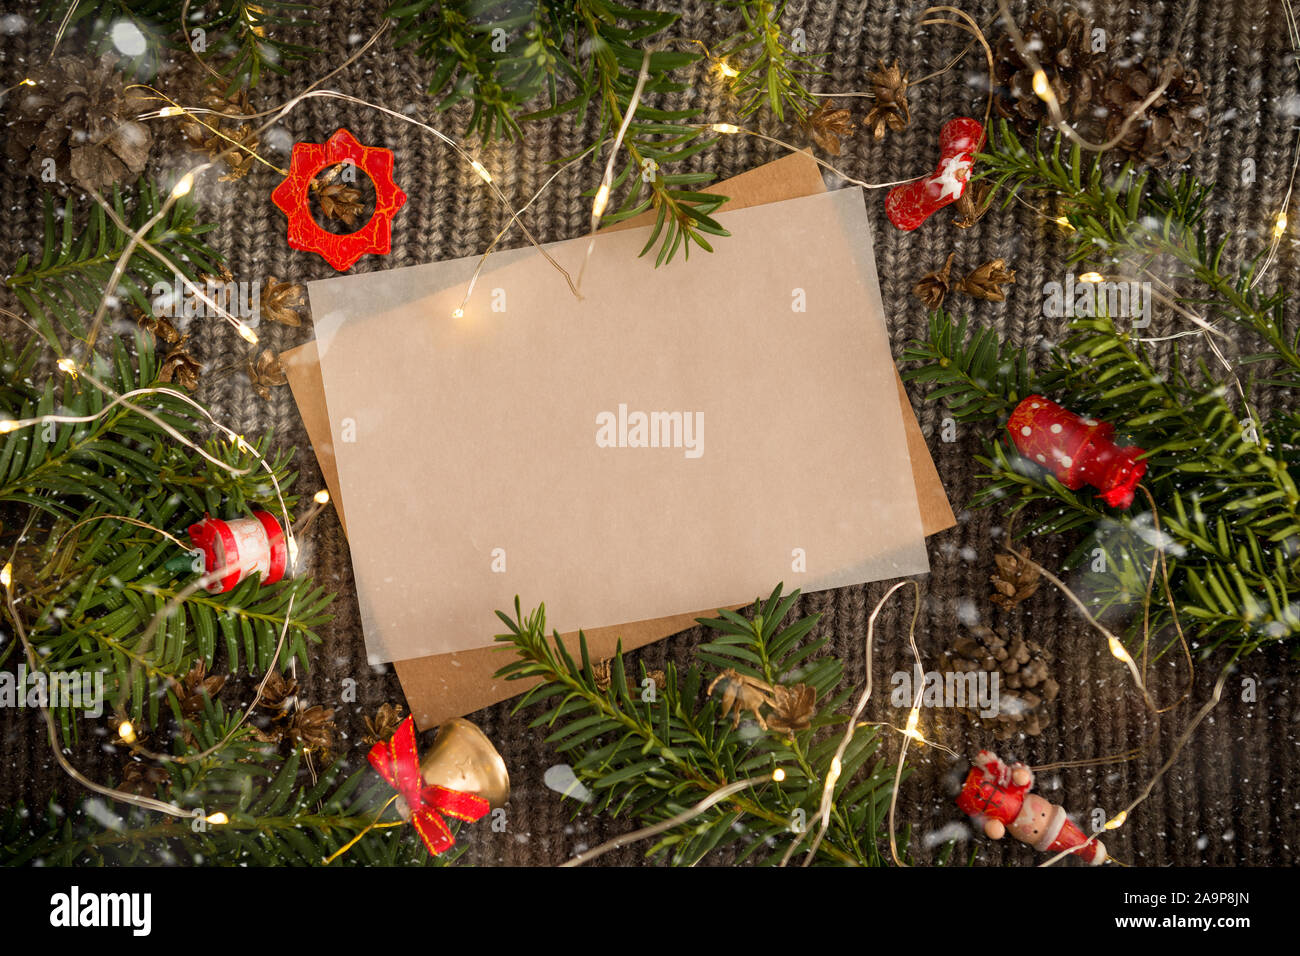 Le papier blanc pour écrire une lettre au Père Noël. Fond sombre d'une  écharpe en tricot avec une guirlande lumineuse Photo Stock - Alamy